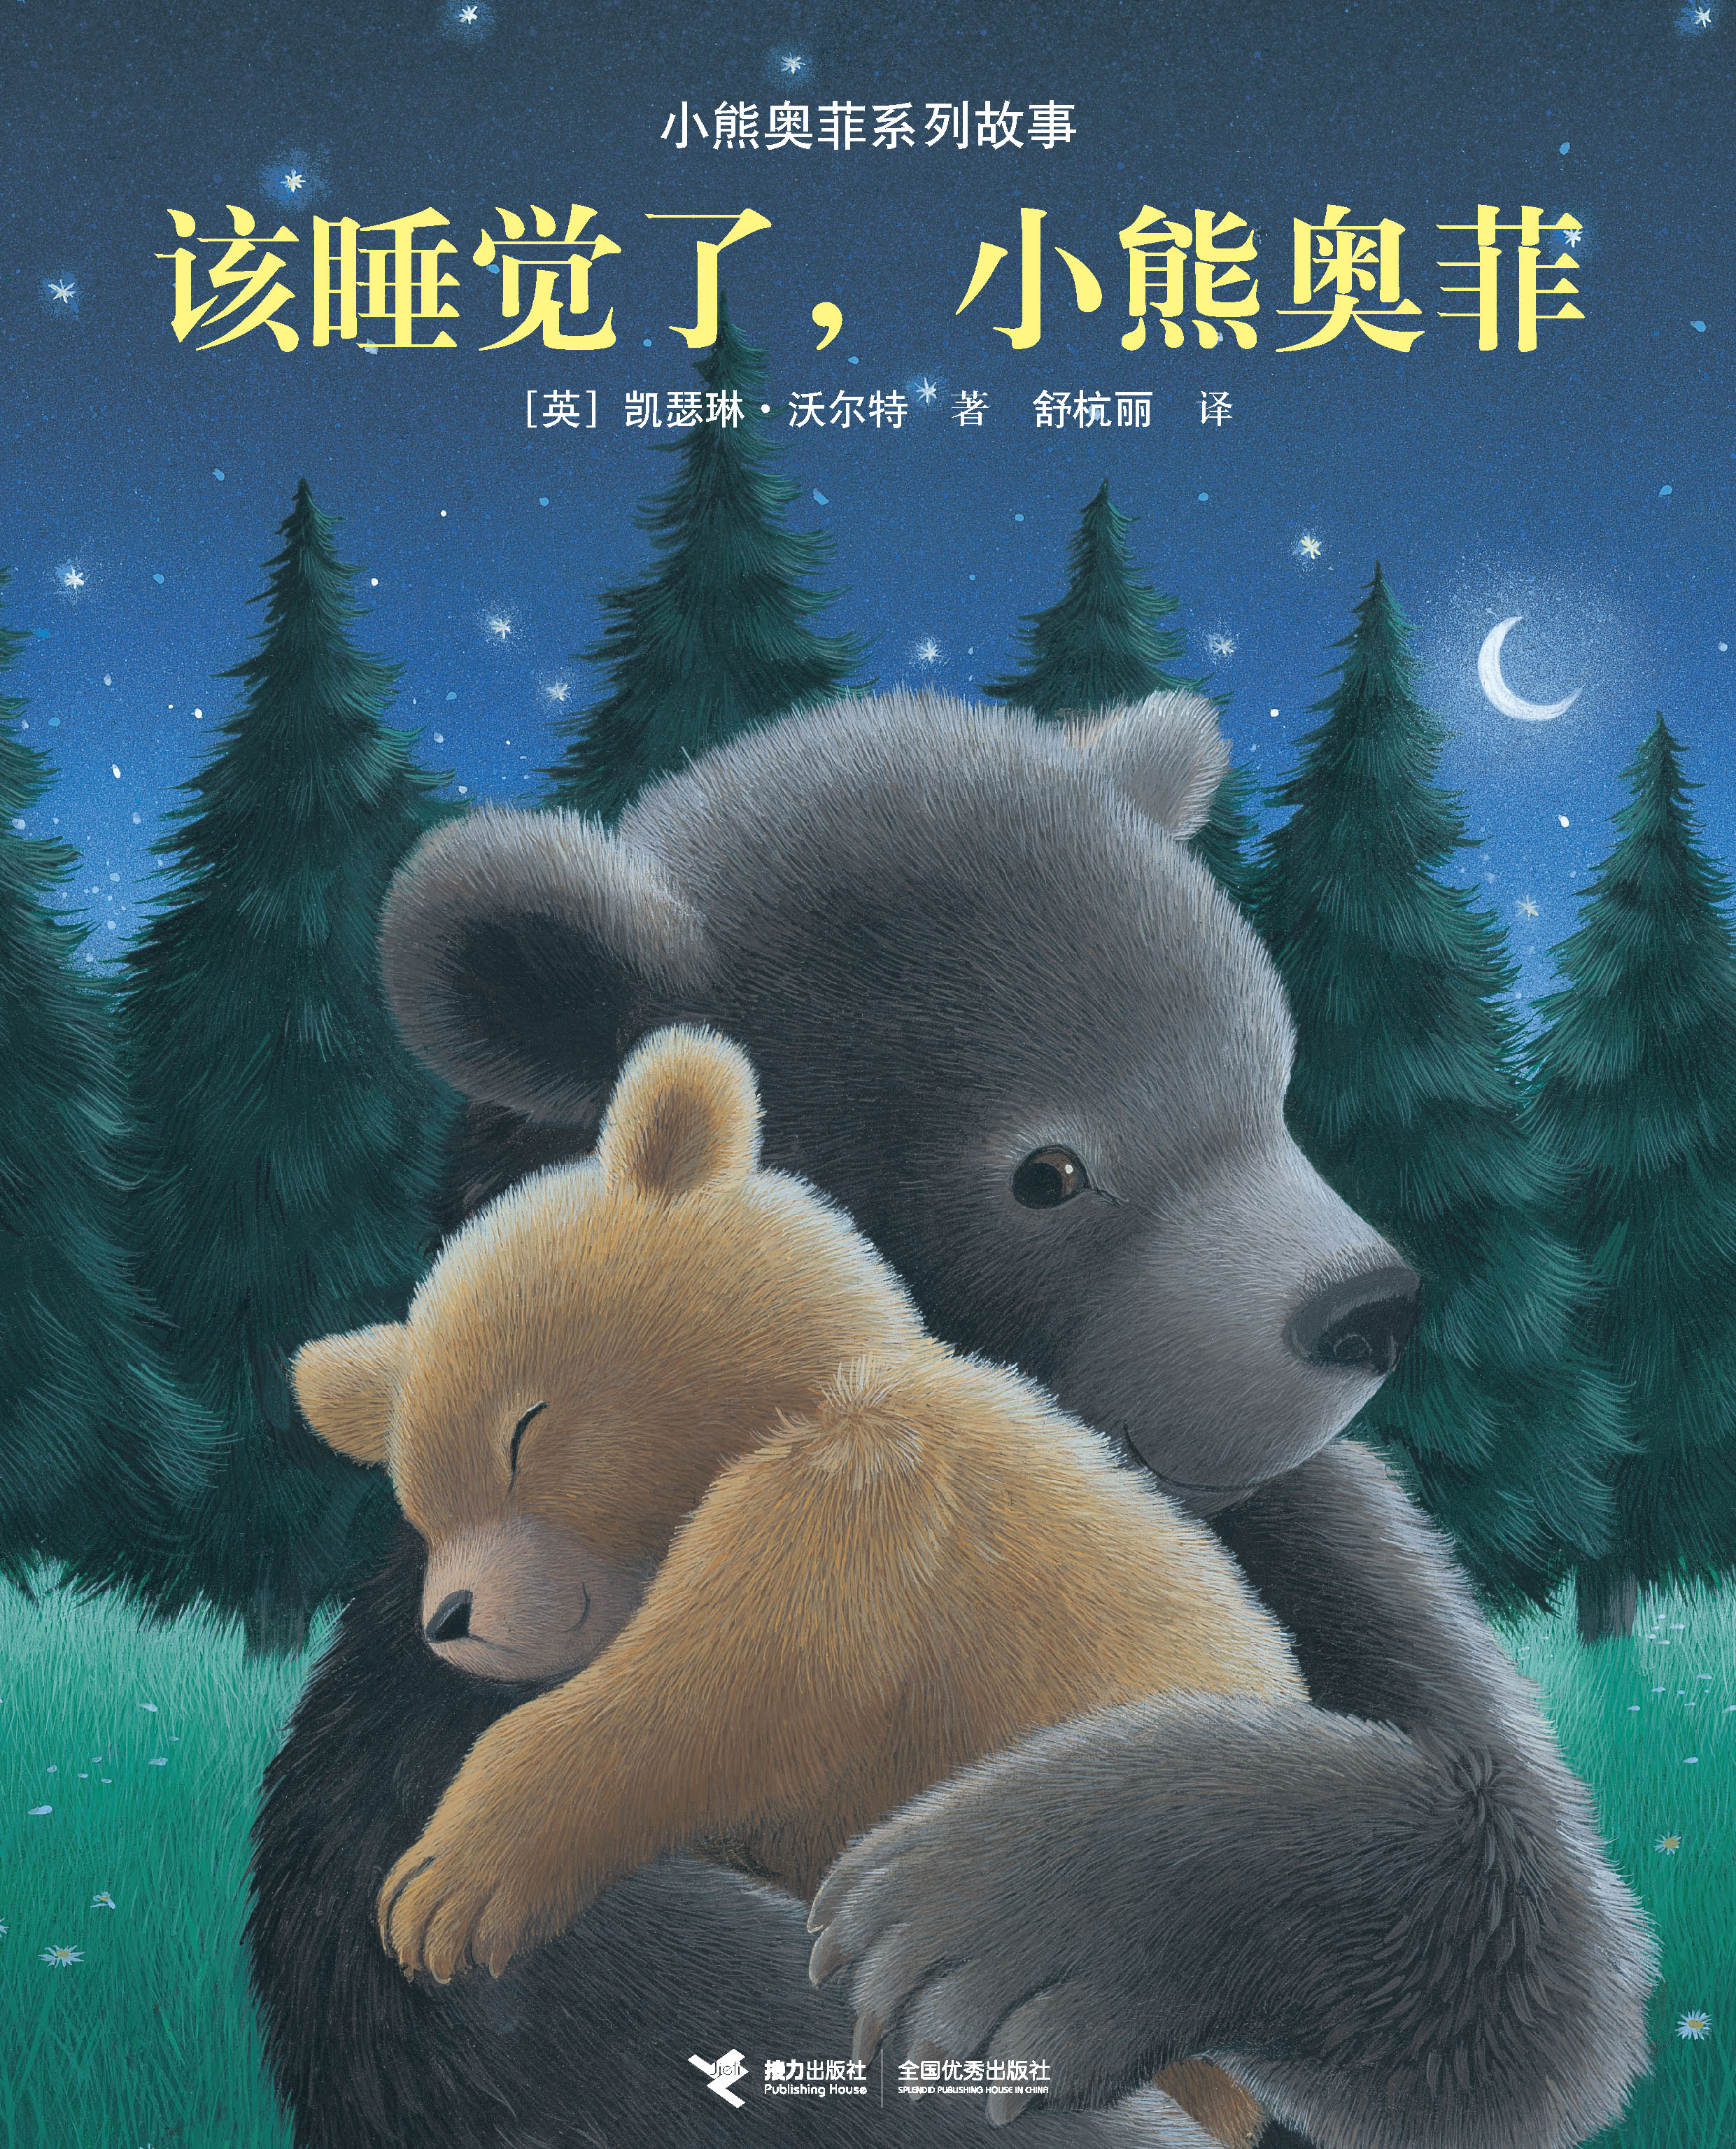 小熊奥菲系列故事:该睡觉了，小熊奥菲